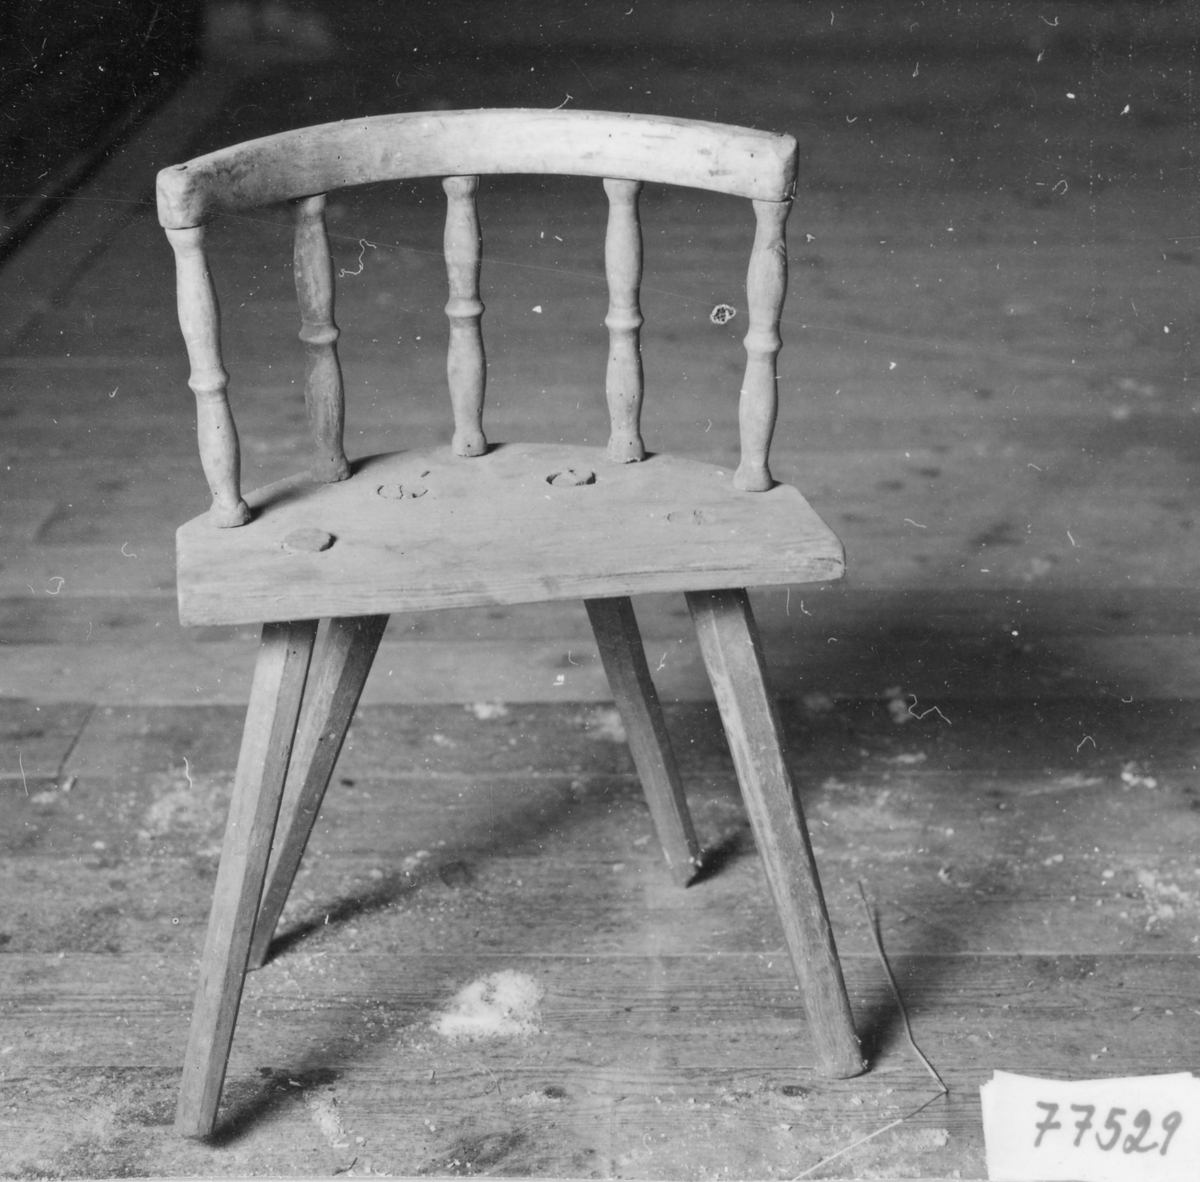 Barnstol med spår av brun målning, nästan halvrund sits med ryggstöd, 5 svarvade pinnar, 4 st intappade och något utällda ben.